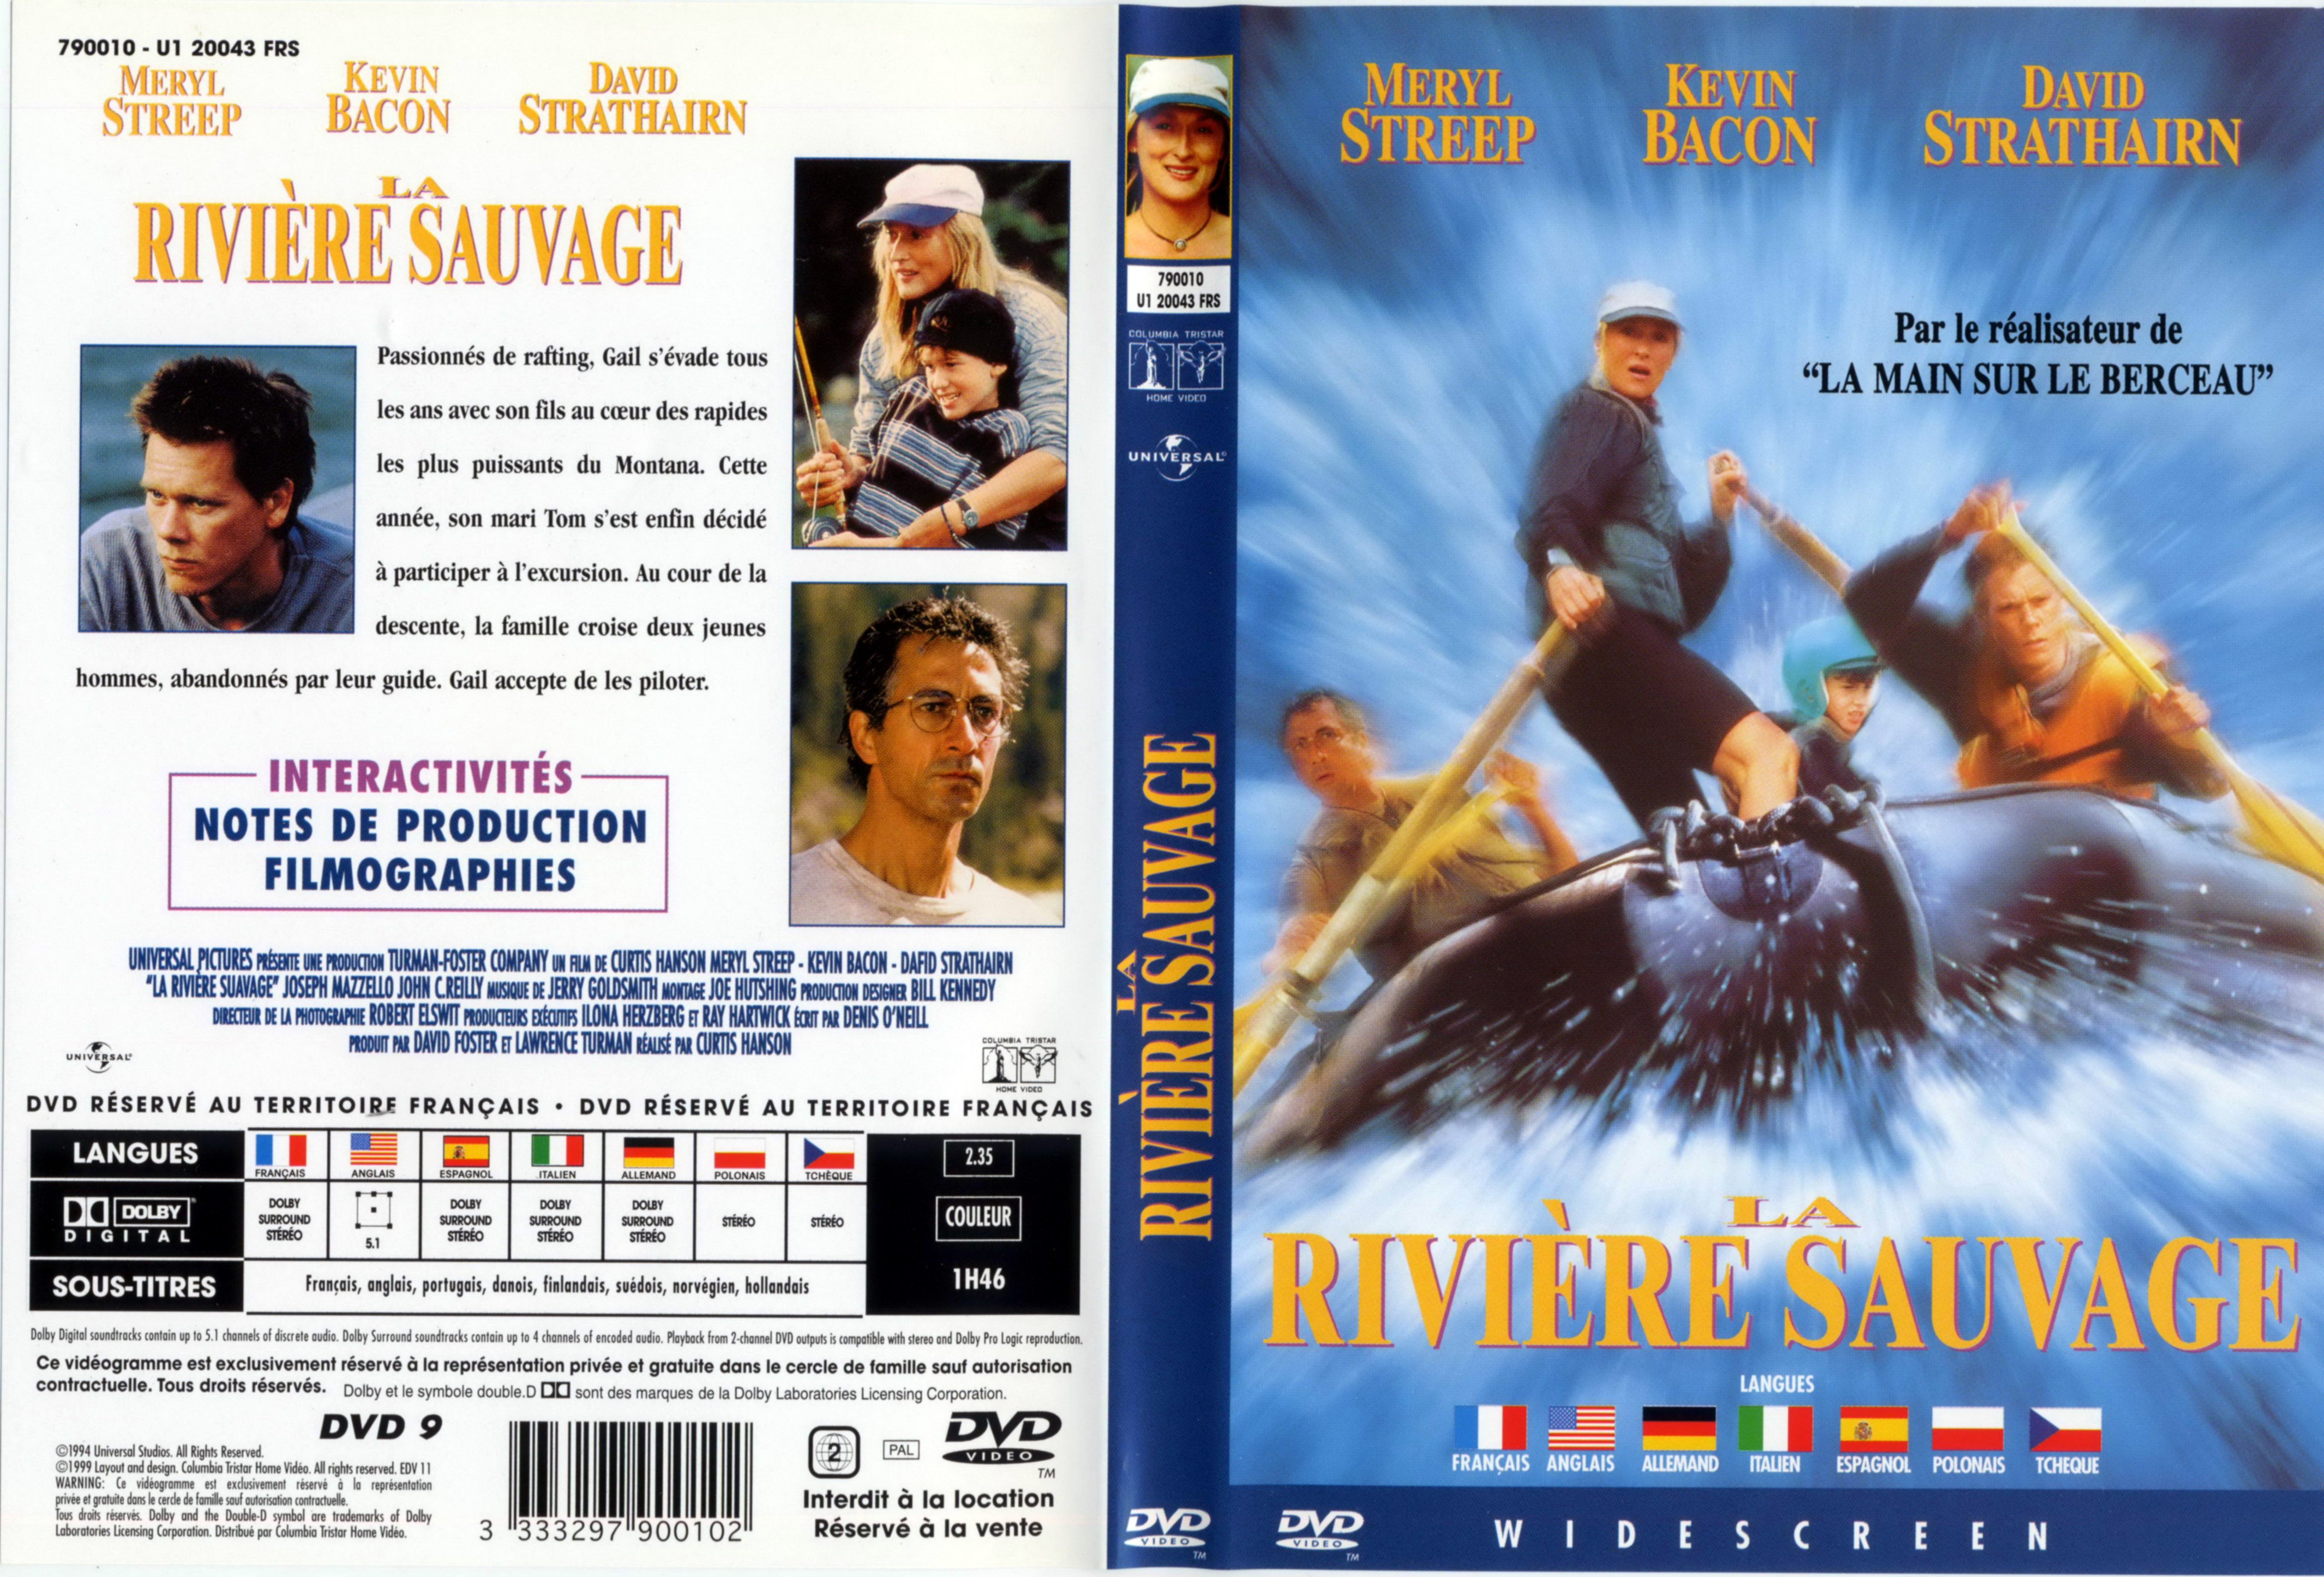 Jaquette DVD La riviere sauvage v2